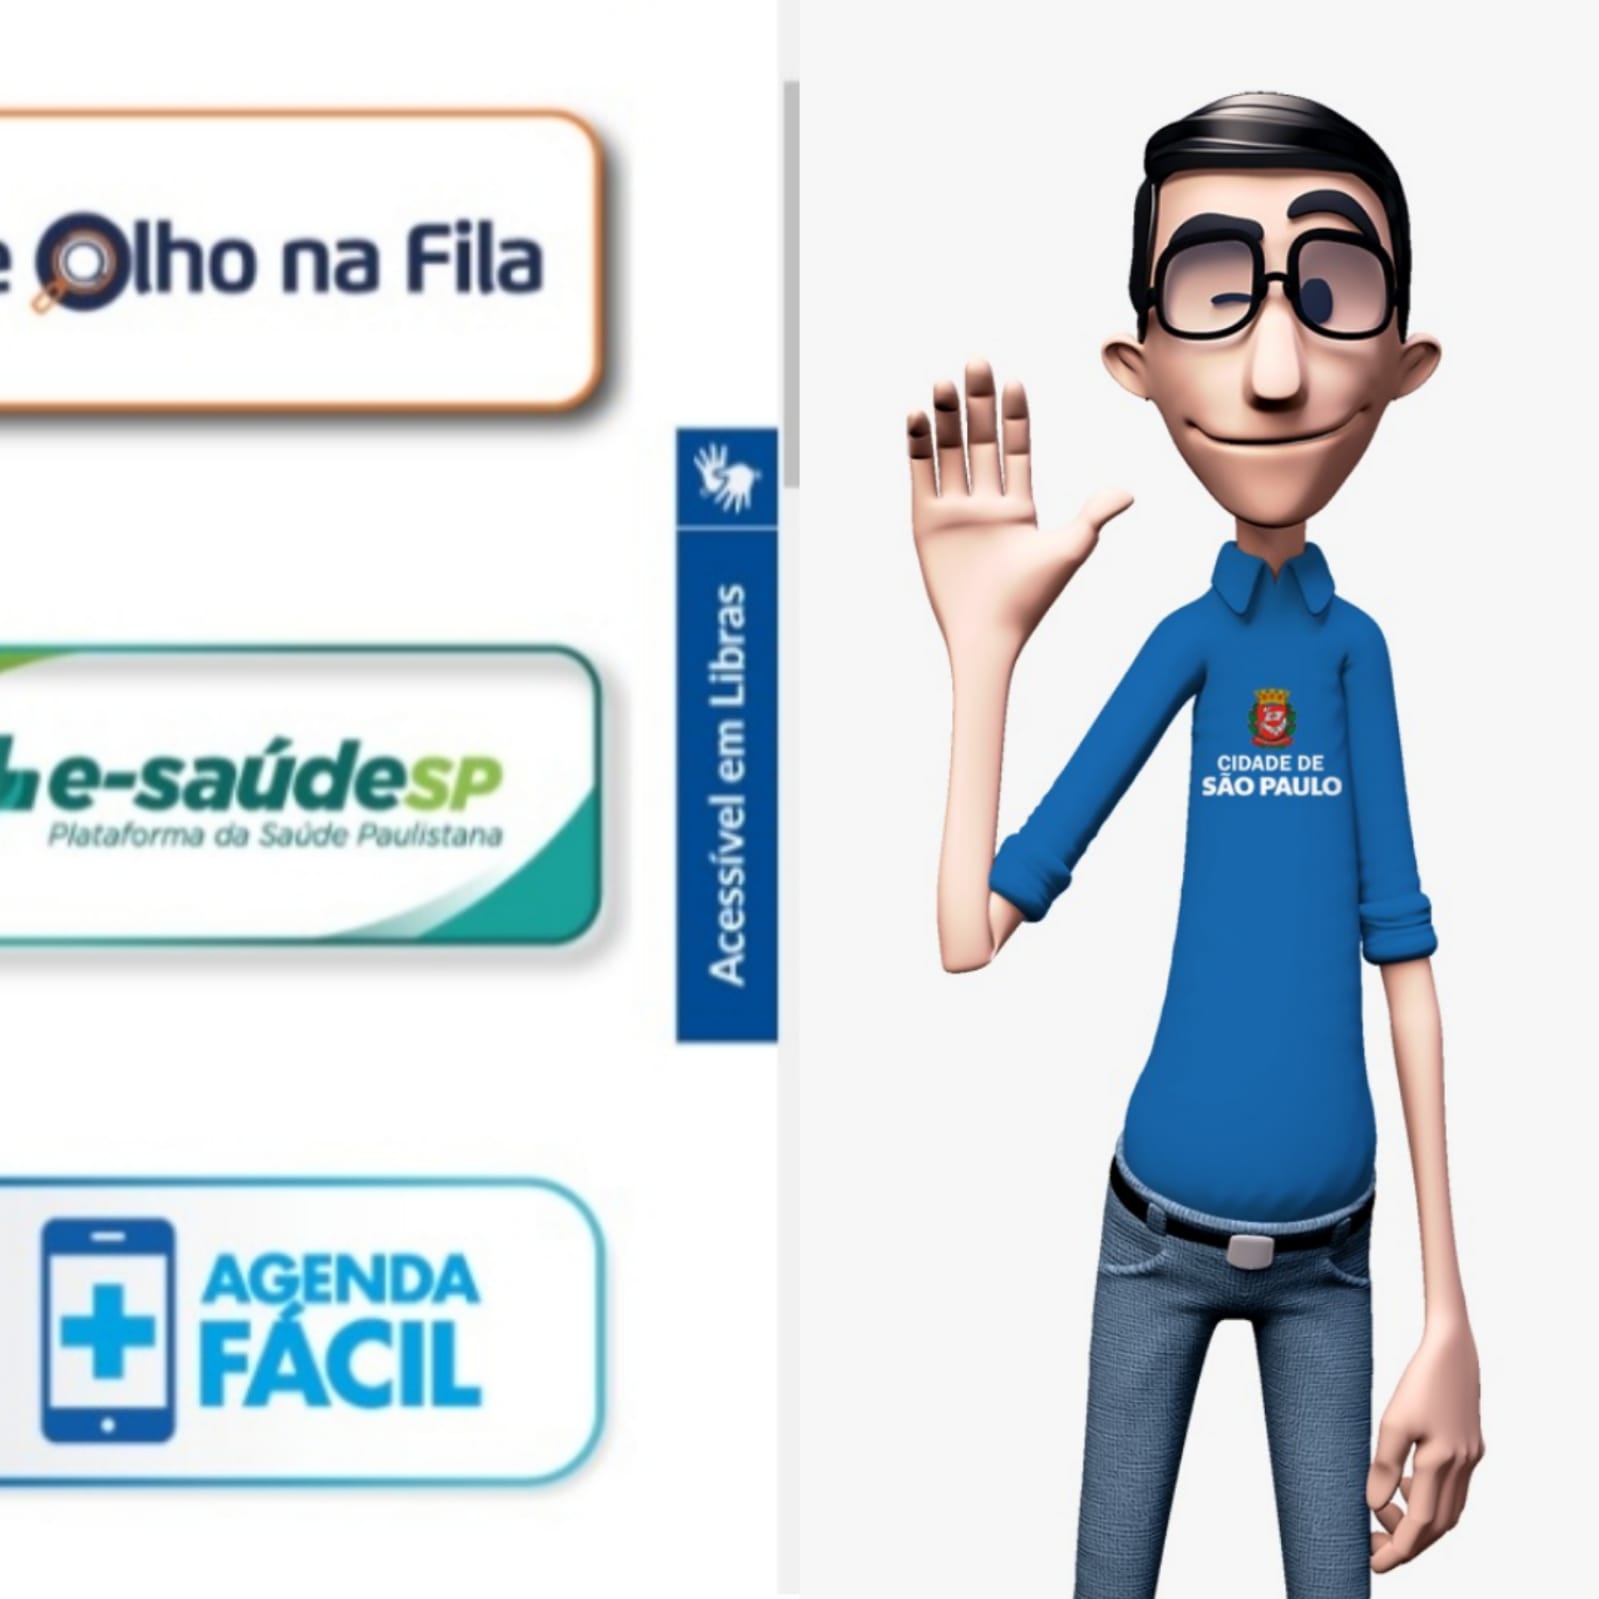 À esquerda da imagem, está uma parte da página inicial do portal da Saúde, com ícones do De Olho na Fila, e-saúde e Agenda Fácil. À direita da imagem, está o personagem Hugo, usando calça jeans, camisa azul com o símbolo da prefeitura e óculos.